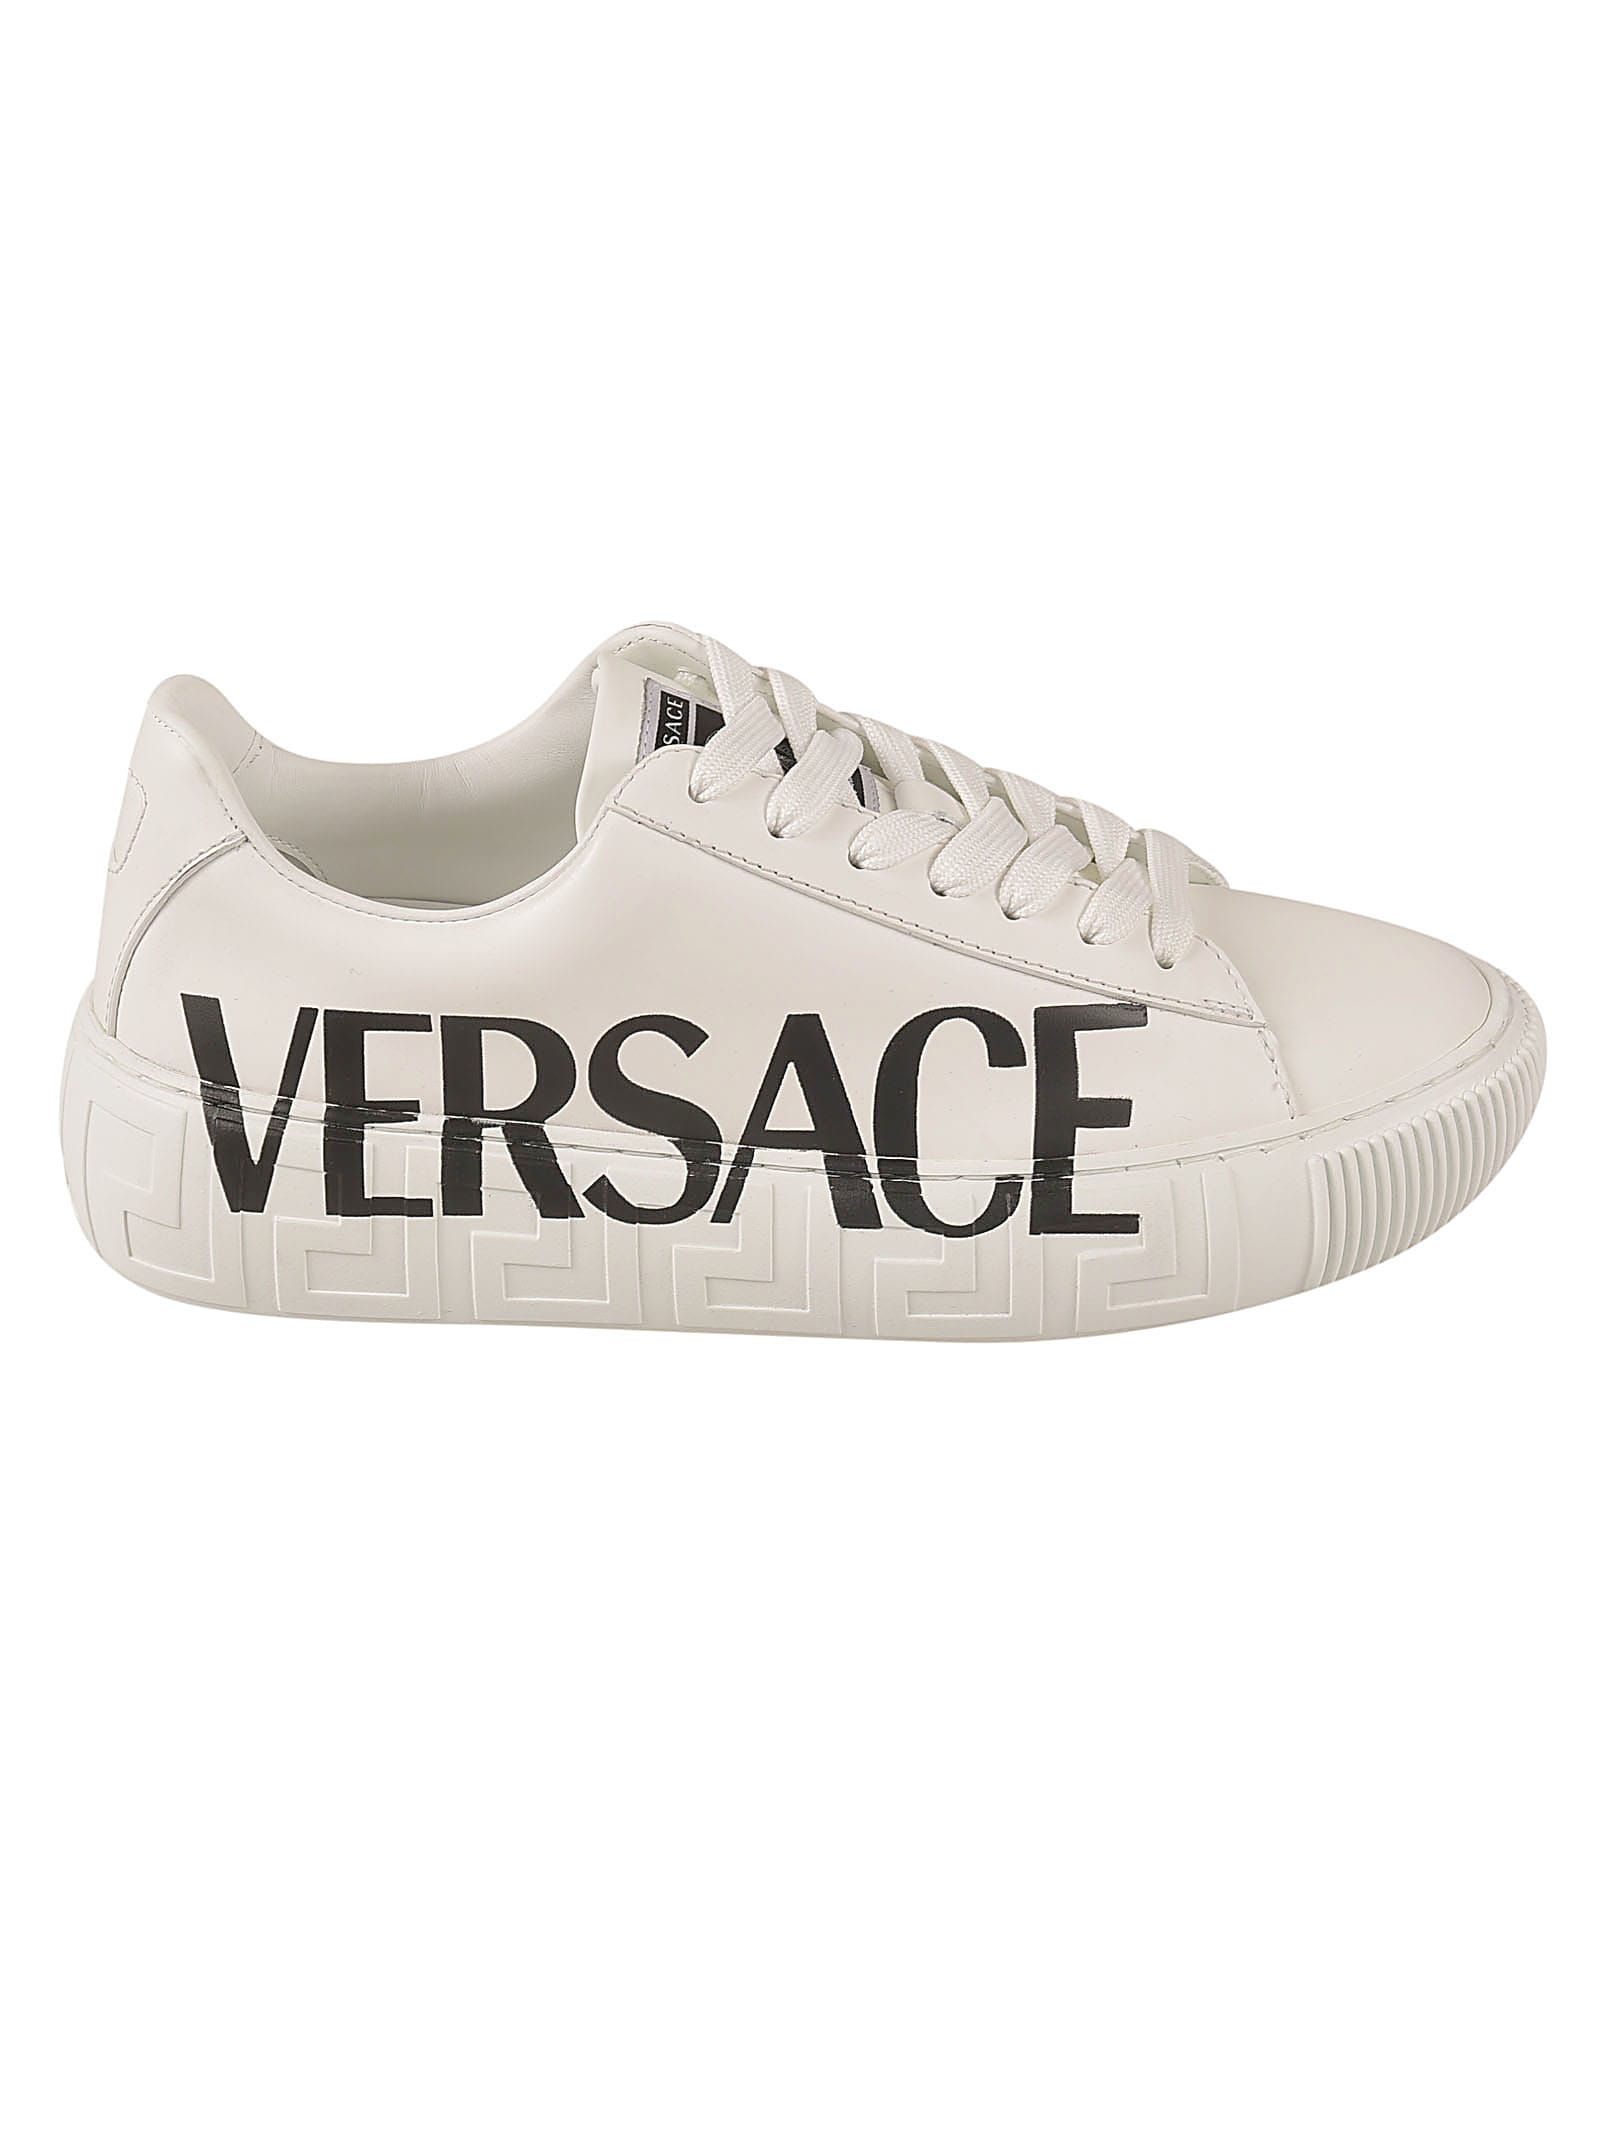 Versace Logo Print Embossed Sole Sneakers